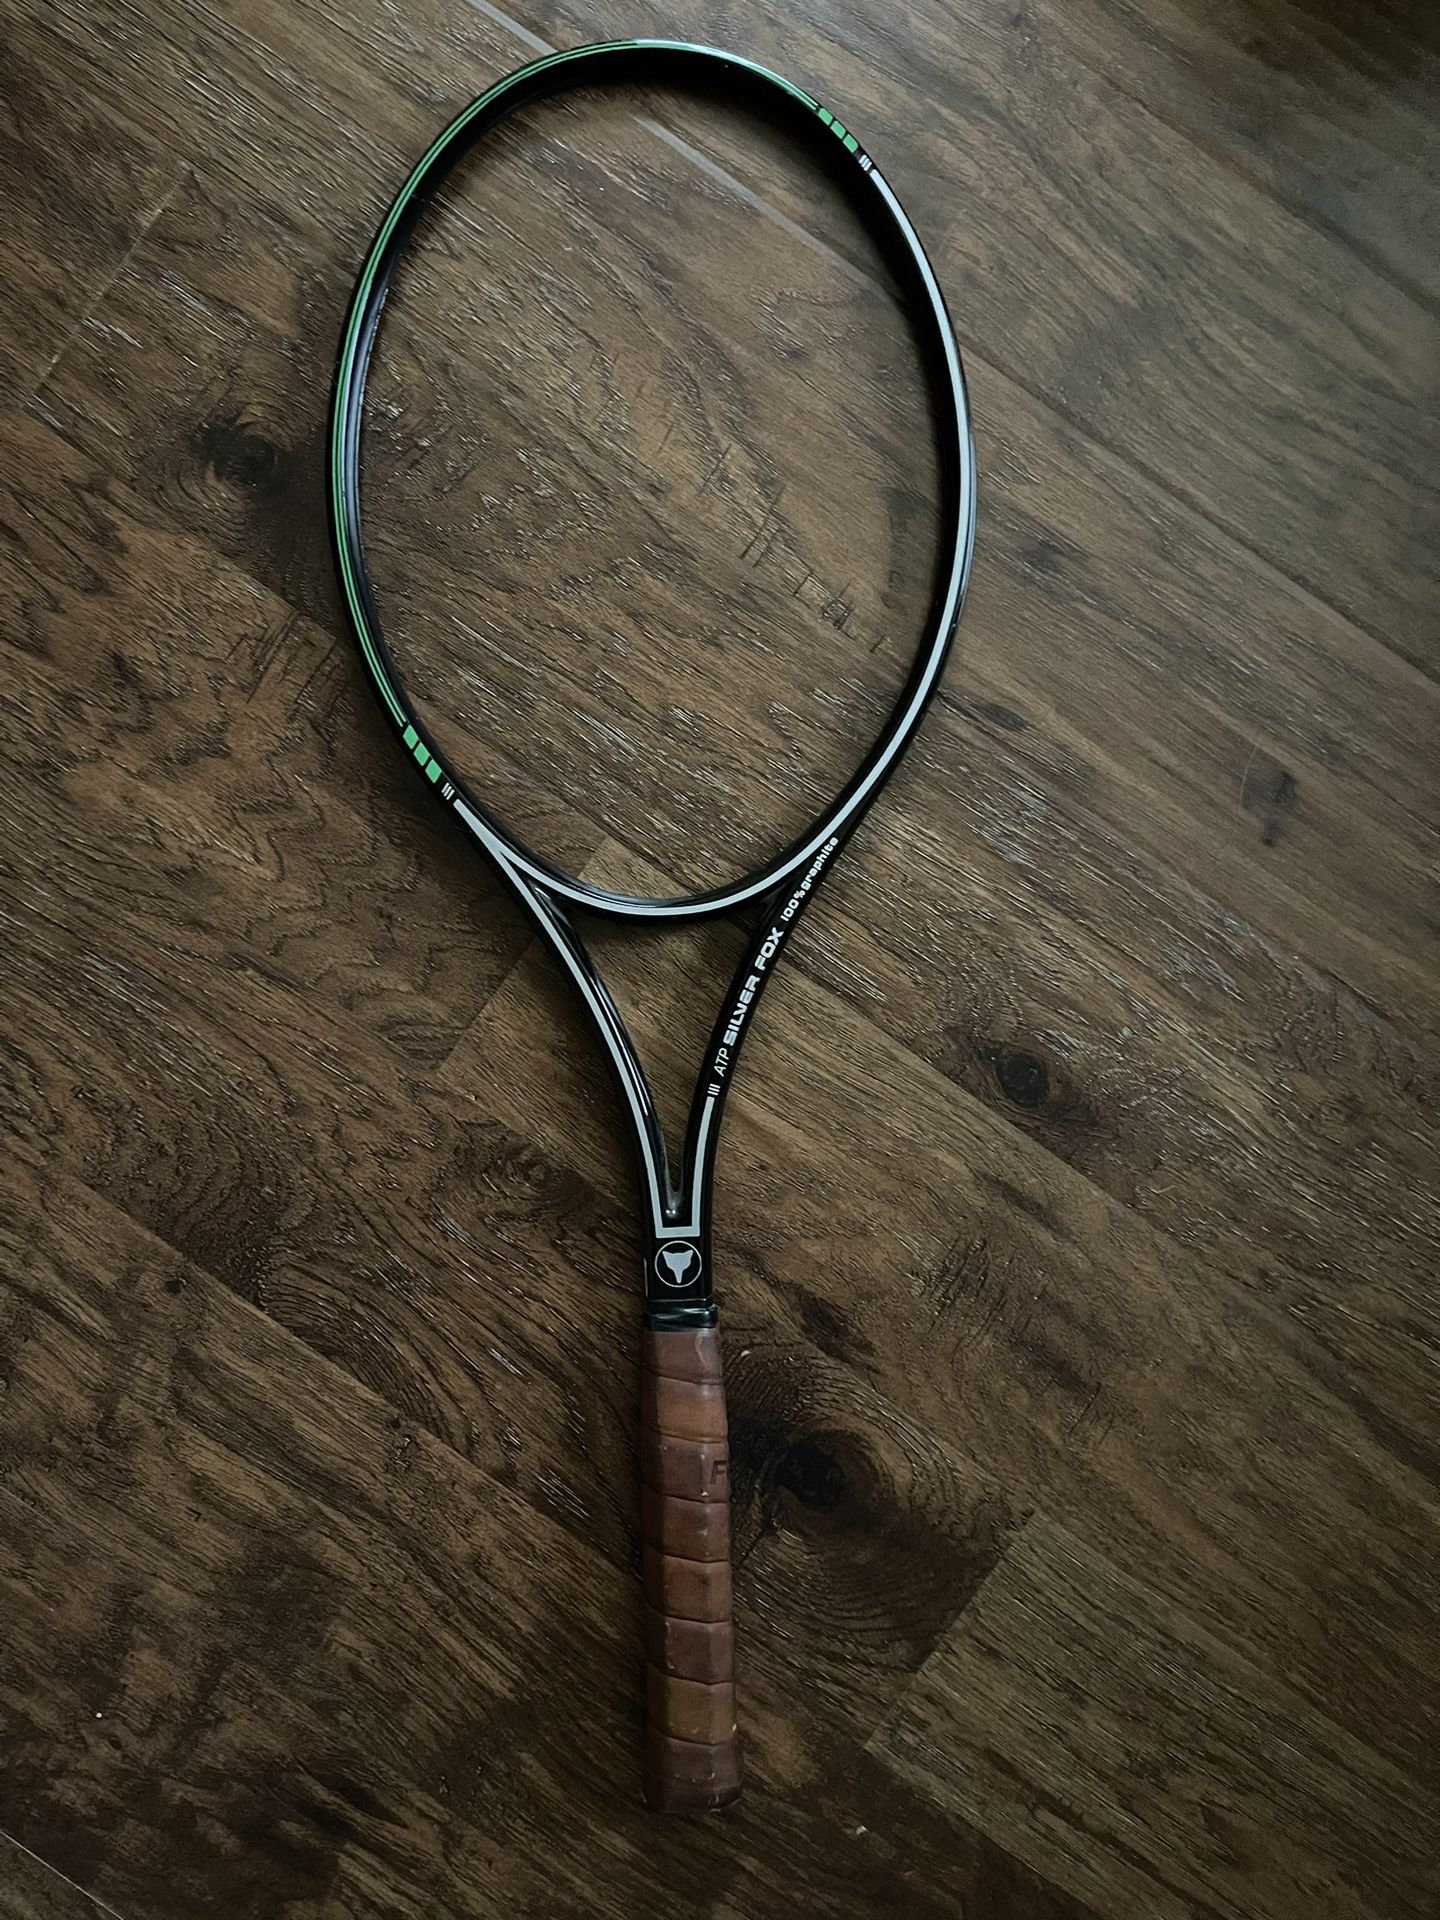 Unstrung Tennis Racket